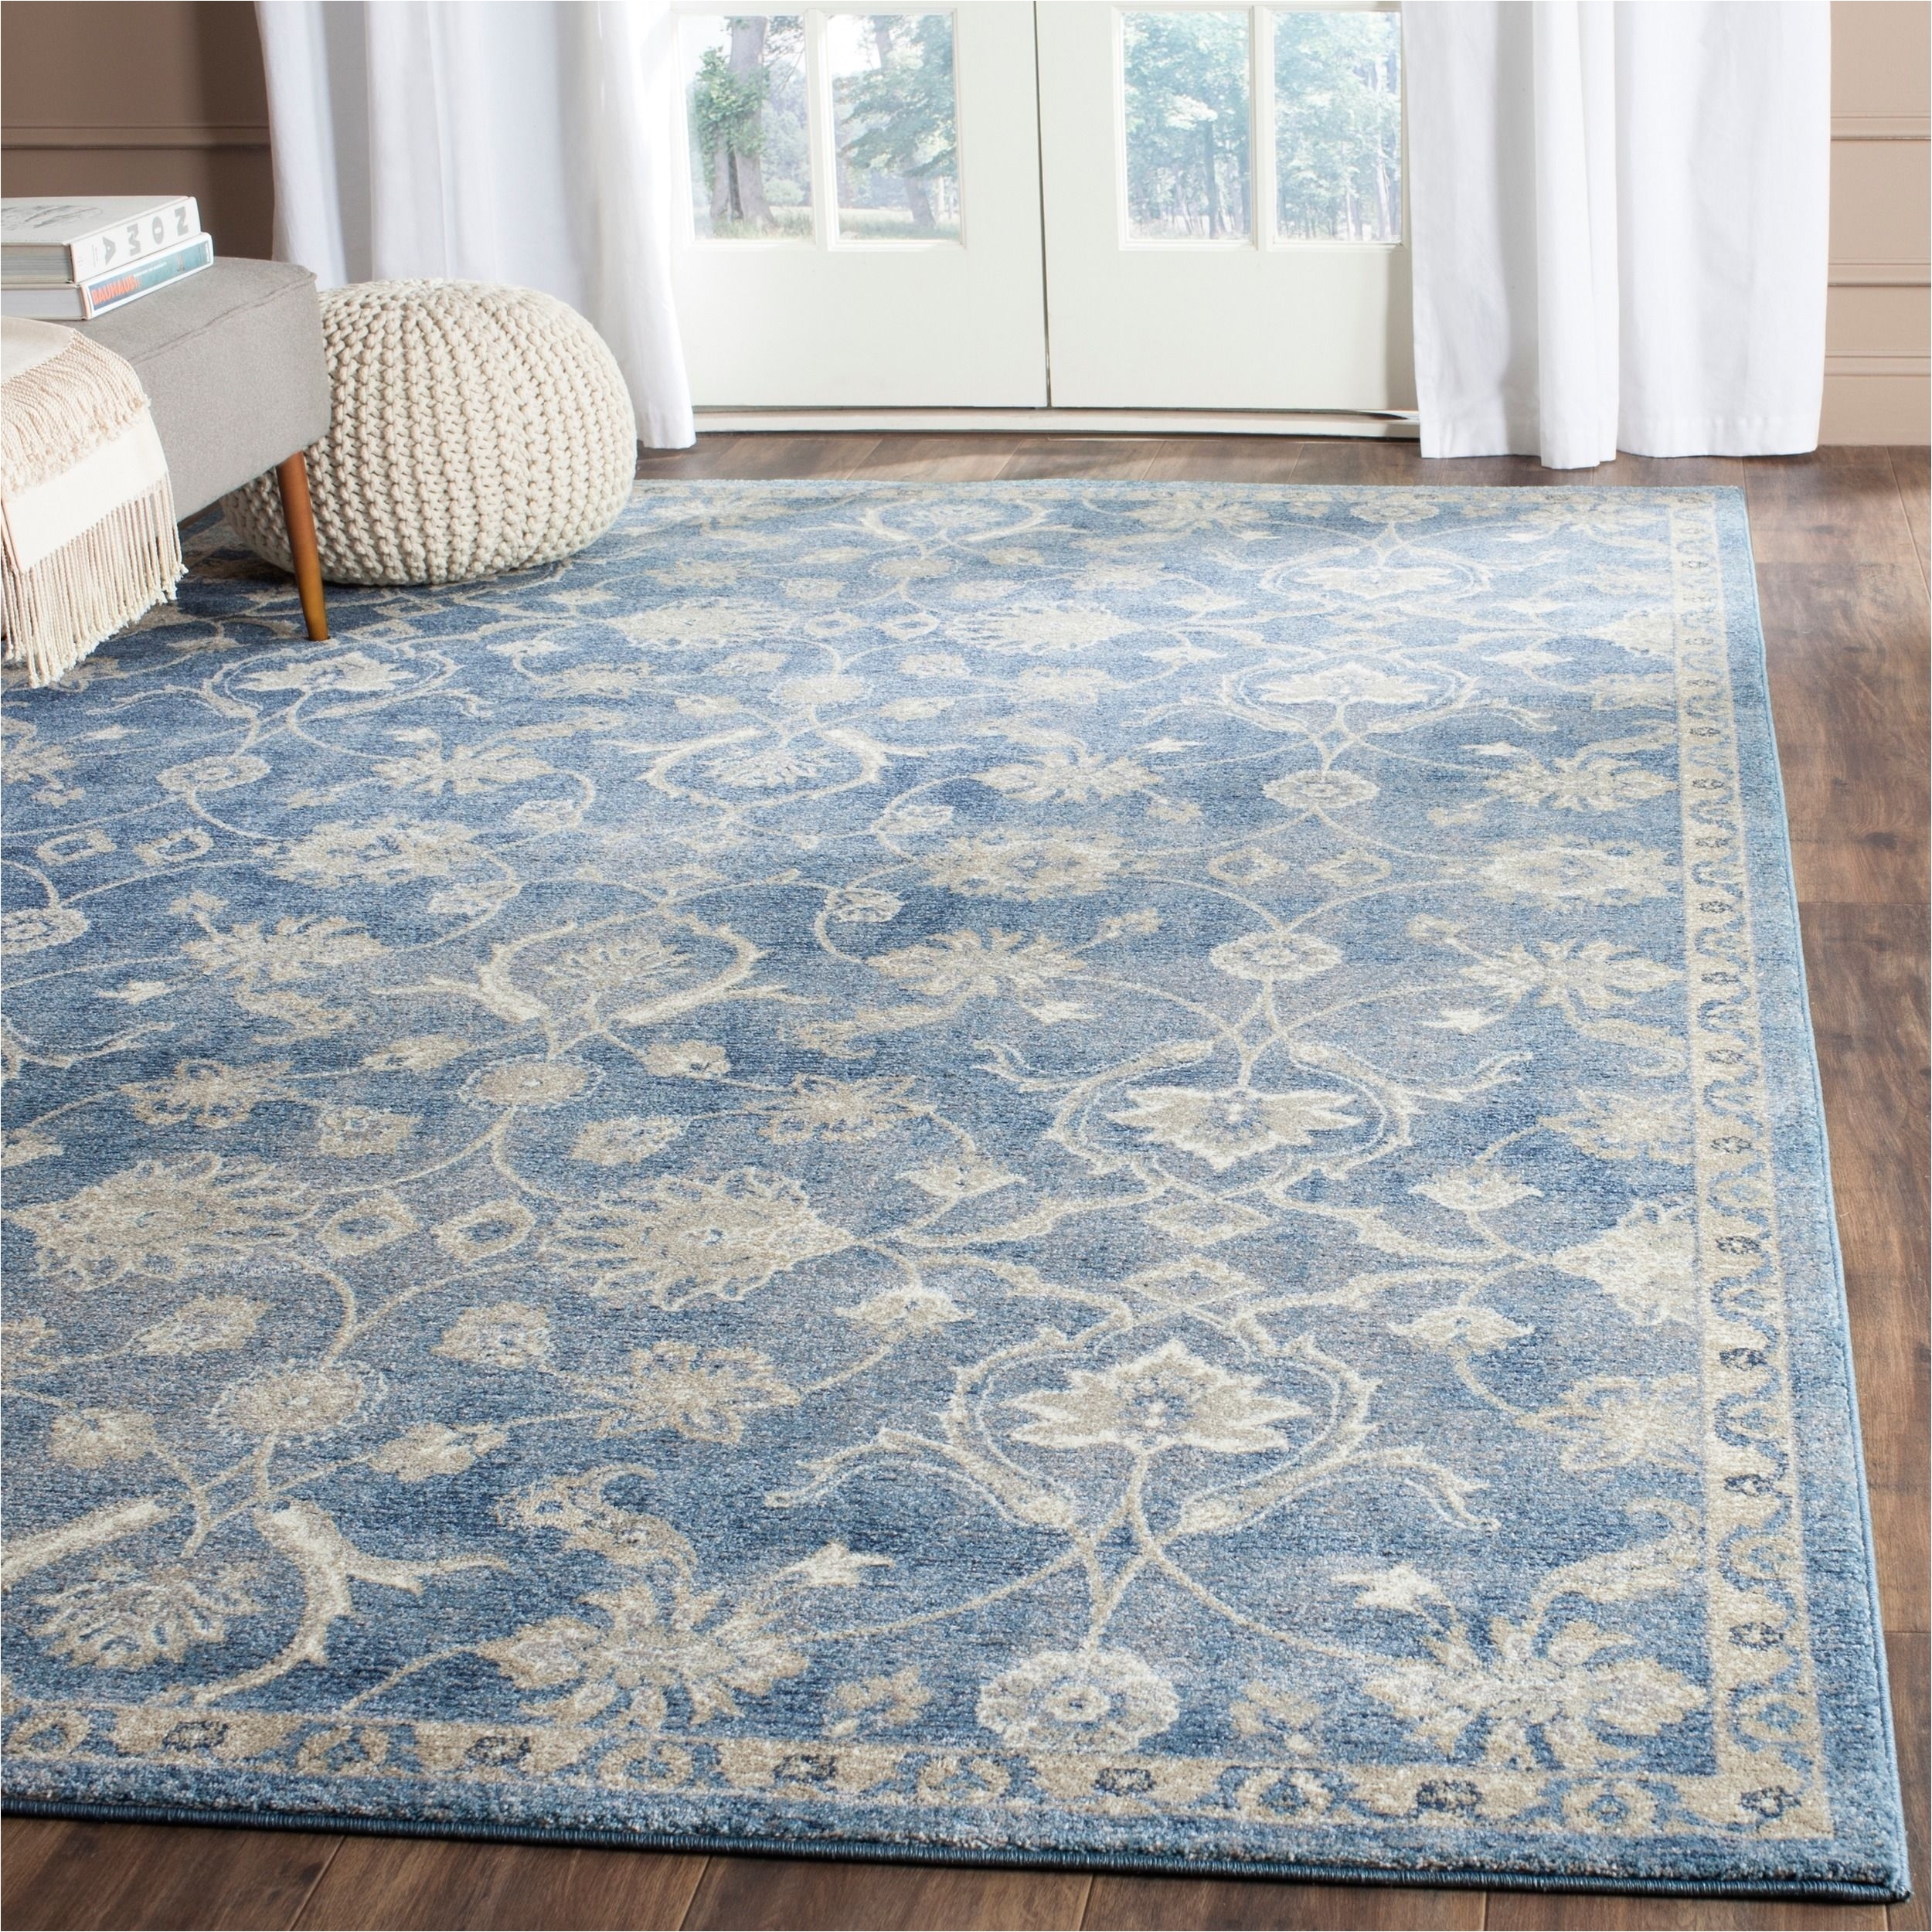 safavieh sofia vintage oriental blue beige rug 8 x 11 sof386c 8 size 8 x 10 polypropylene geometric